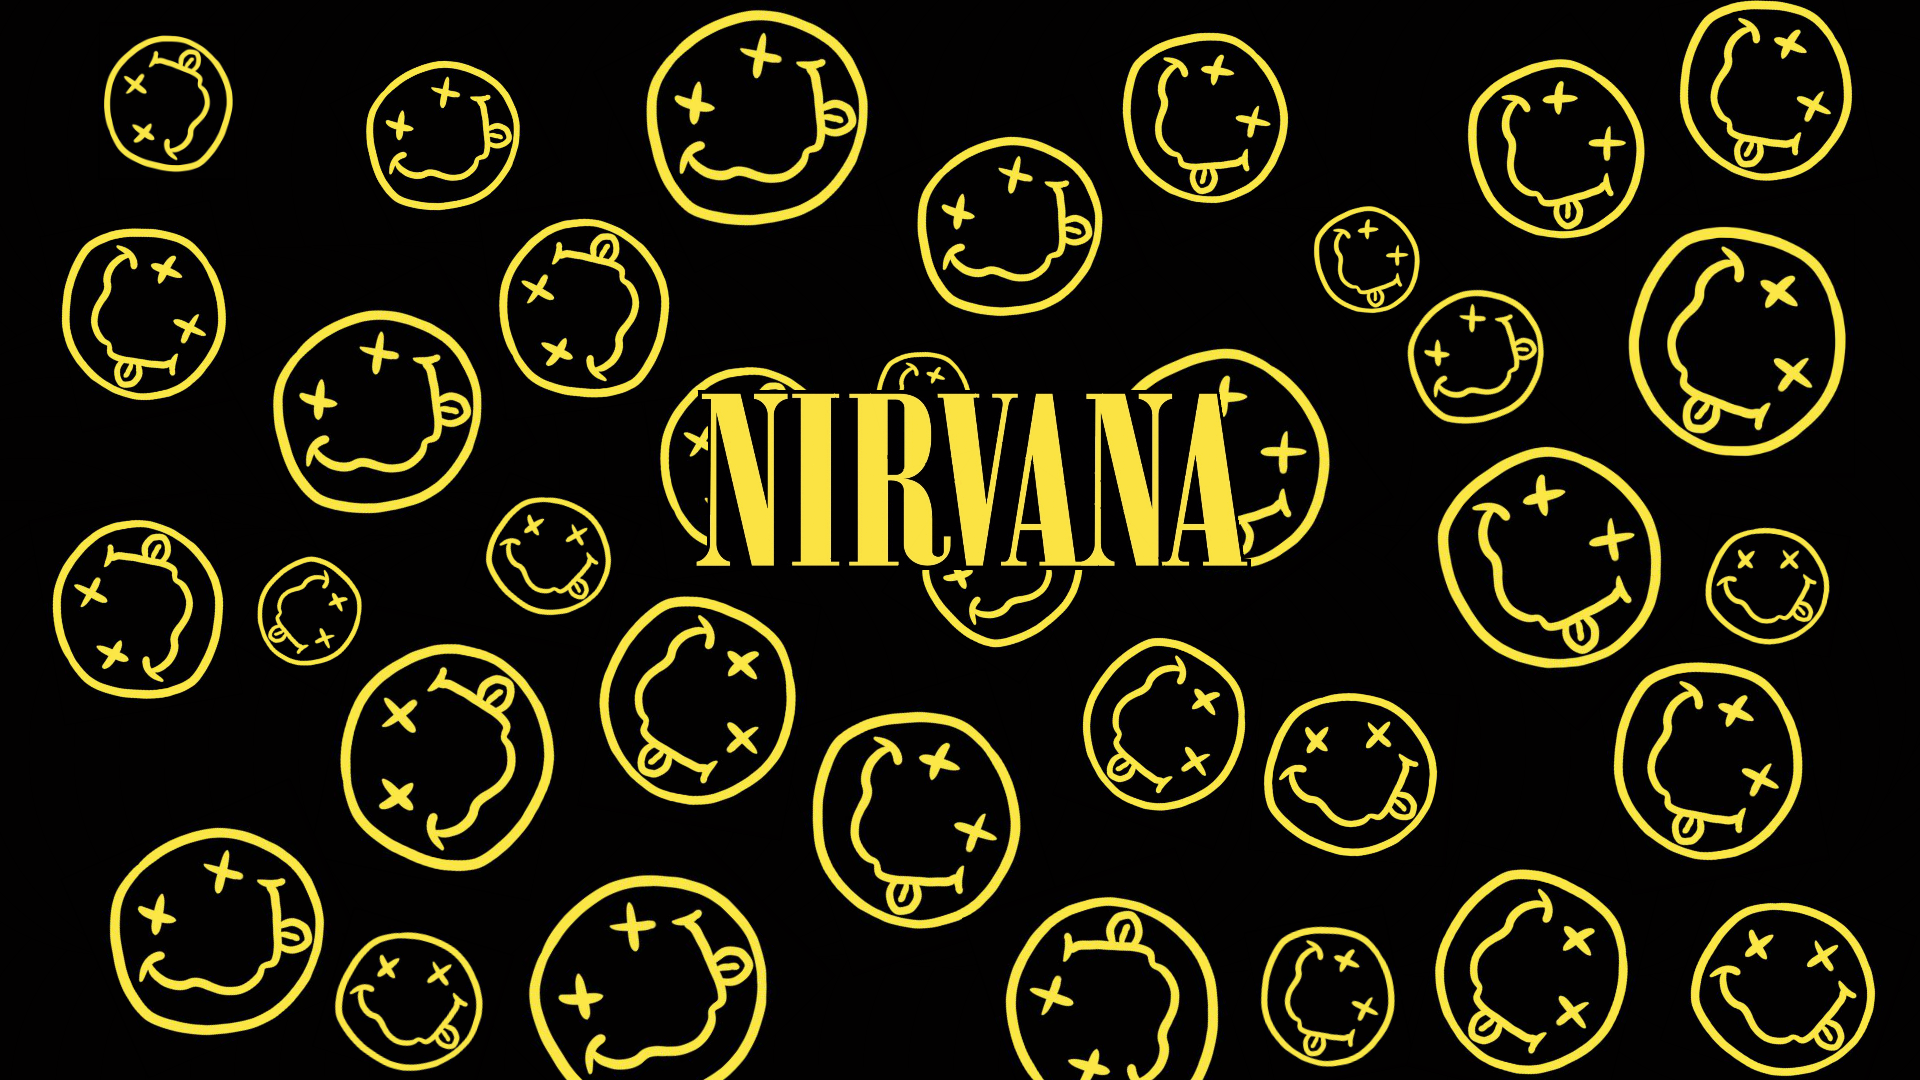 Nirvana smiley wallpaper by Noiretirc on